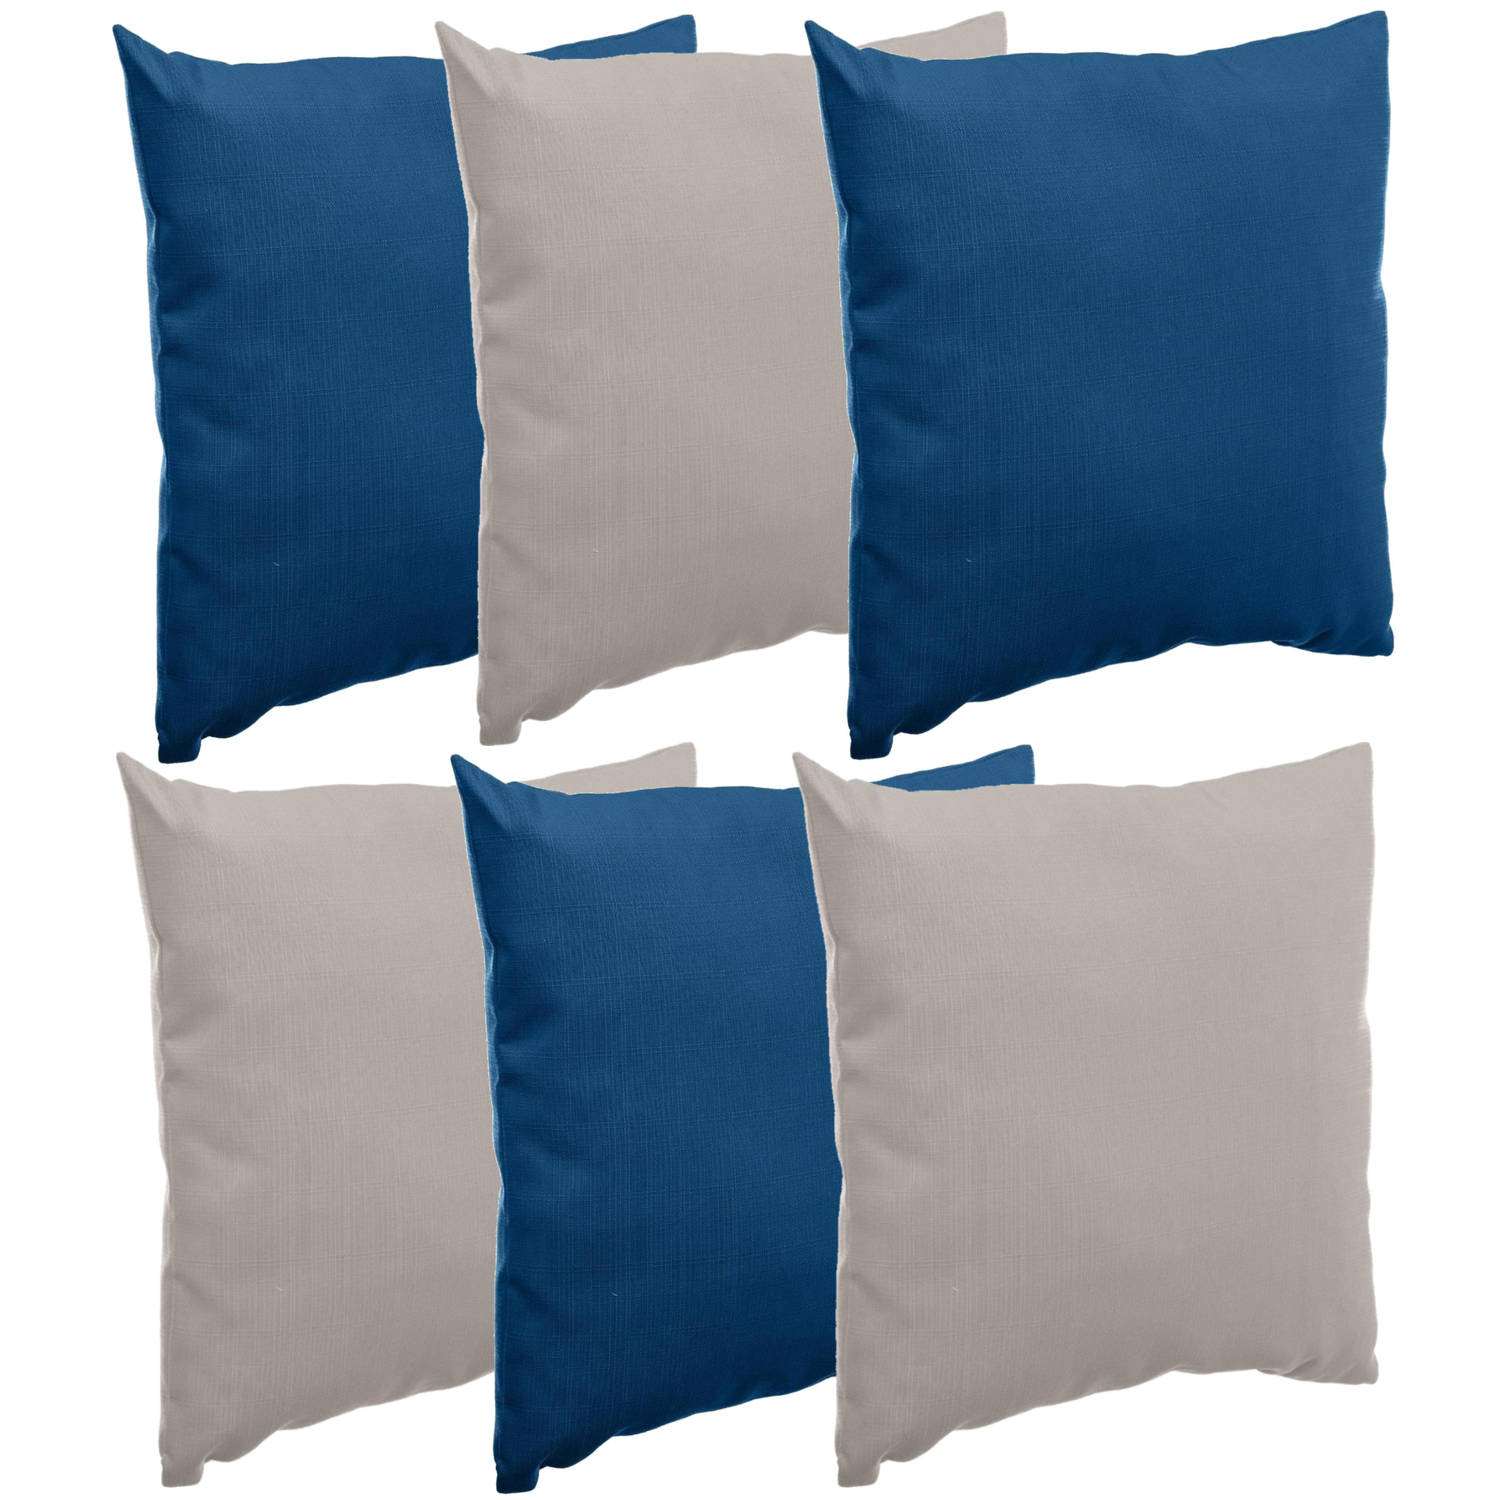 Bank-sier-tuin kussens voor binnen-buiten set 6x stuks indigo blauw-taupe 40 x 40 cm Sierkussens